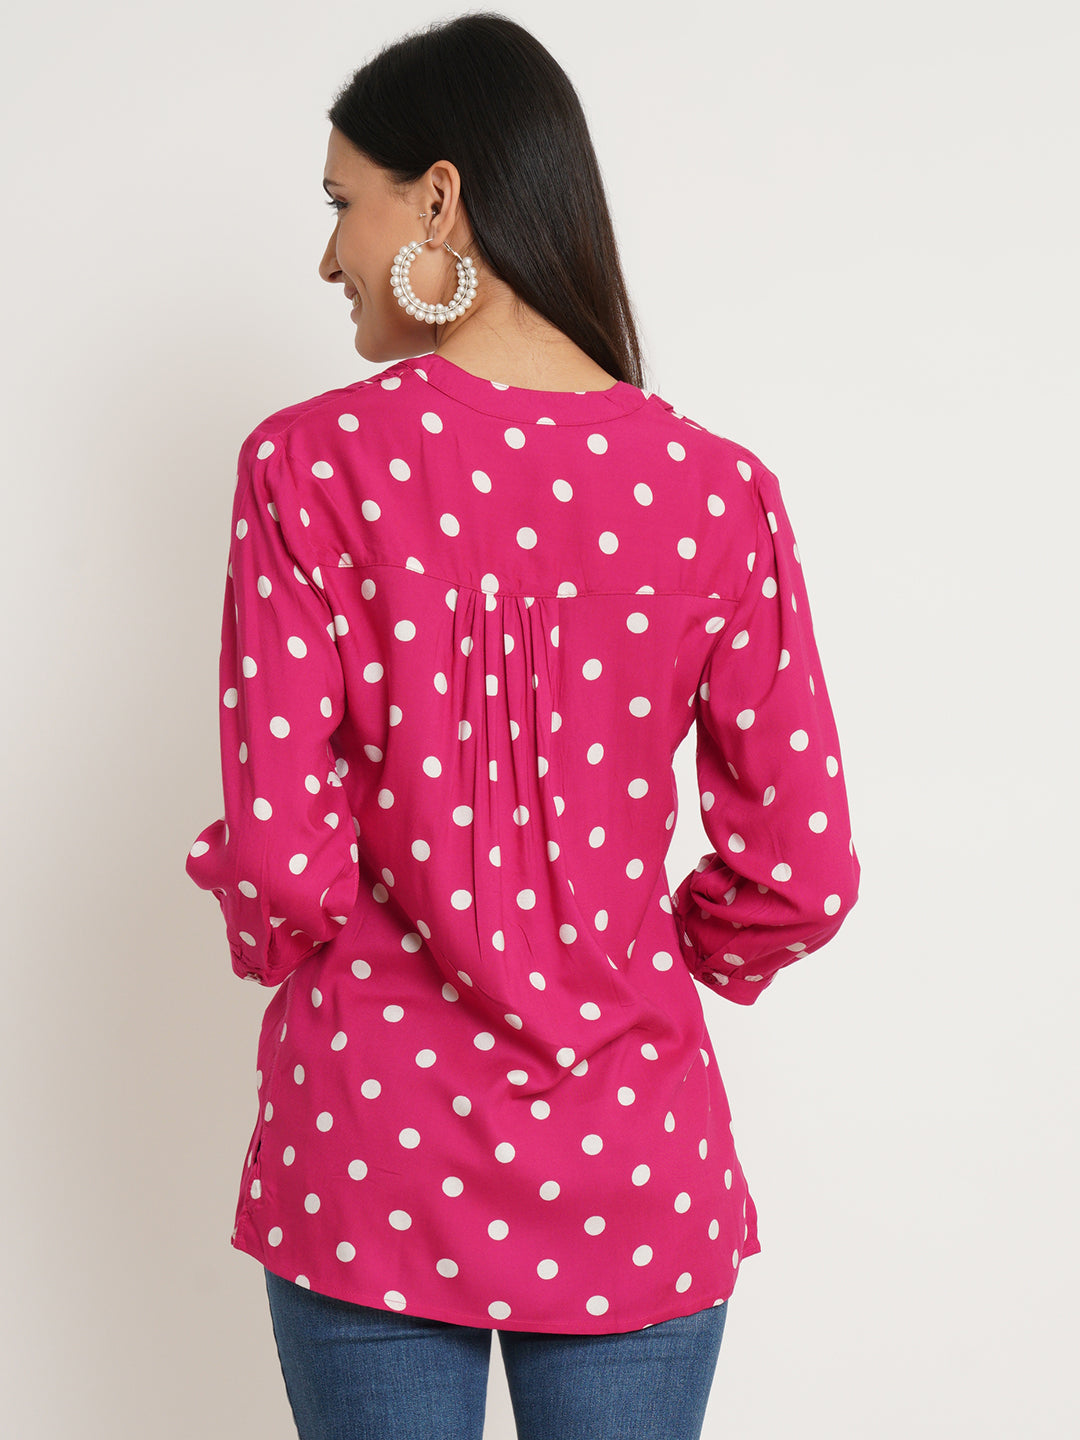 Women Red & White Polka Dot Print Plus Size Top